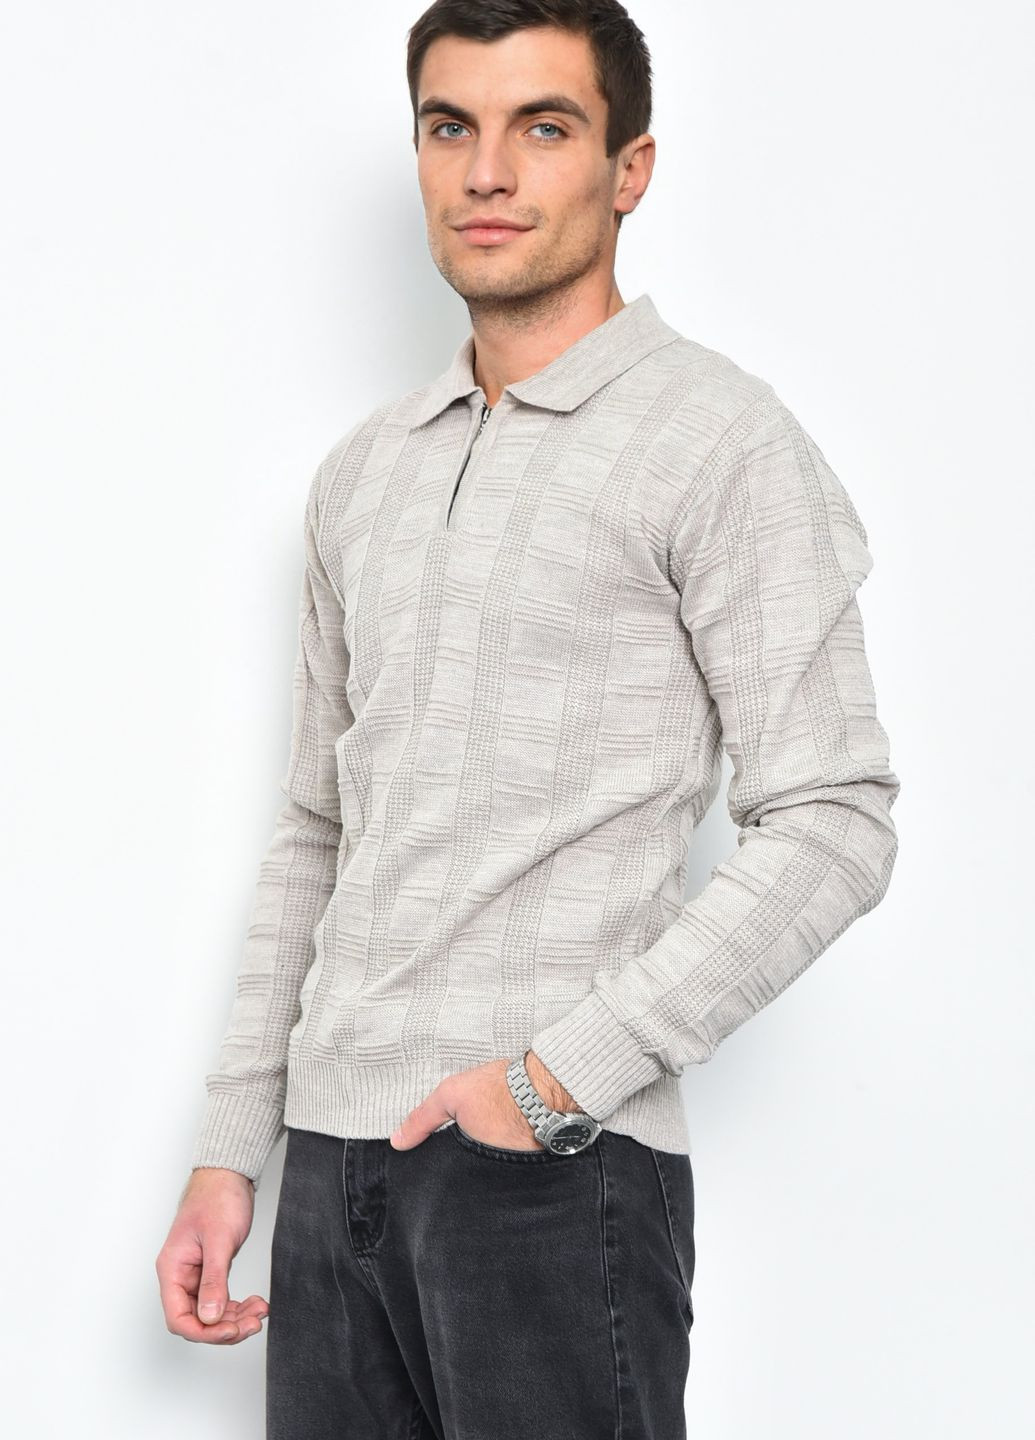 Бежевый демисезонный свитер мужской бежевого цвета акриловый пуловер Let's Shop